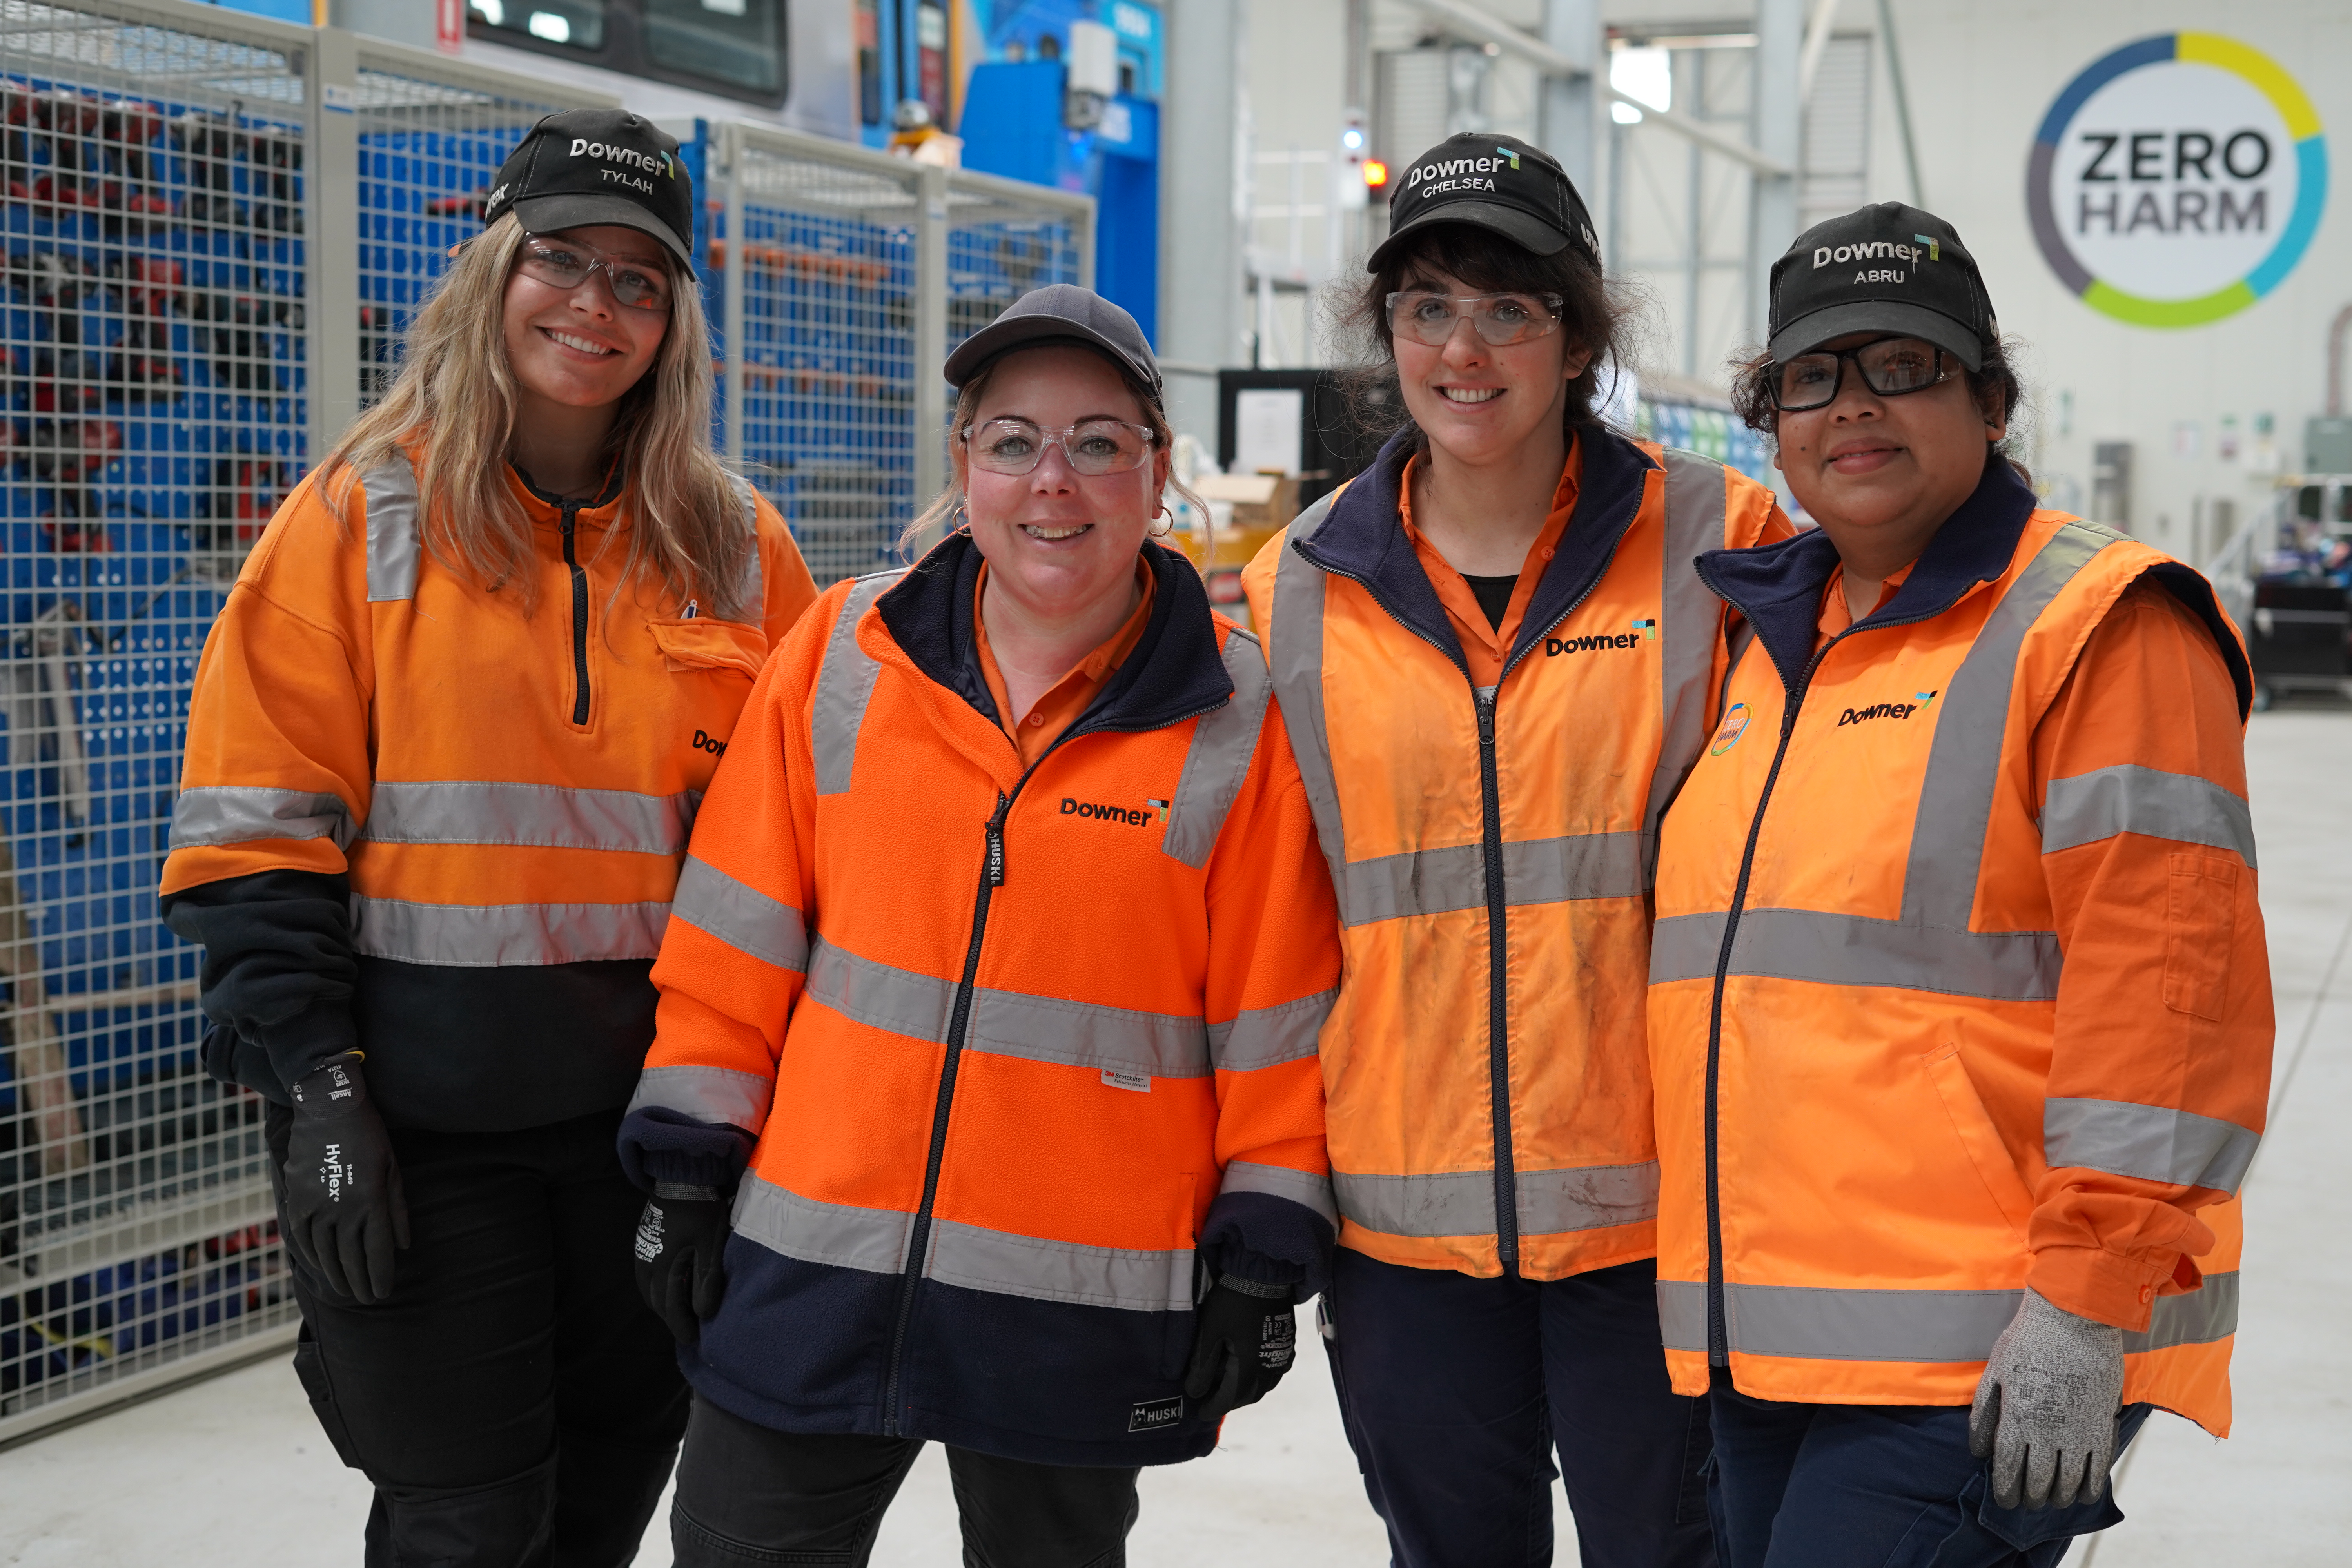 Female trainee rail workers